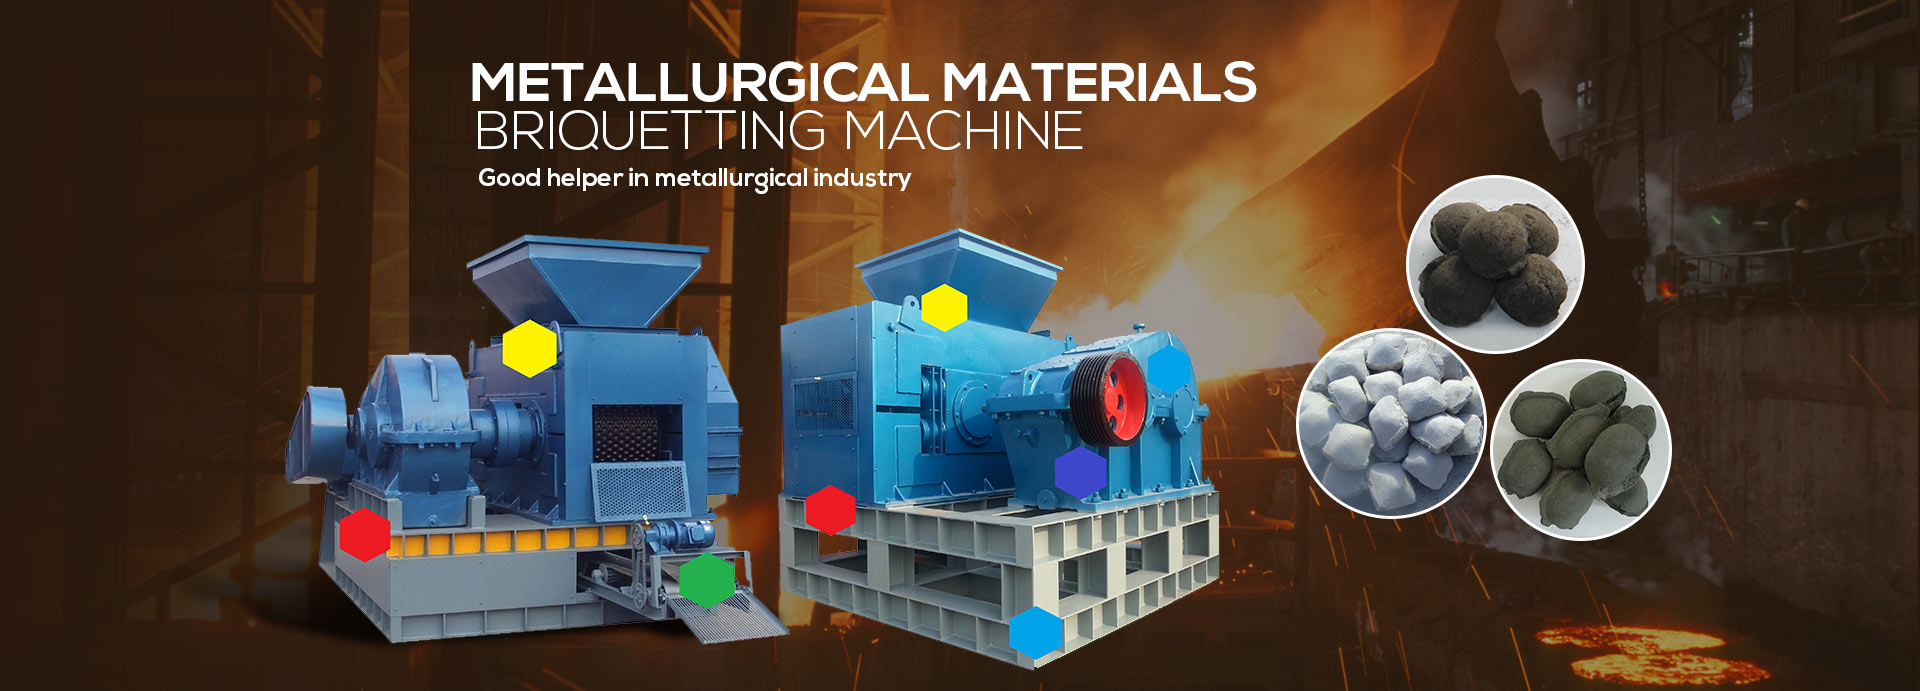 metallurgical briquette machine